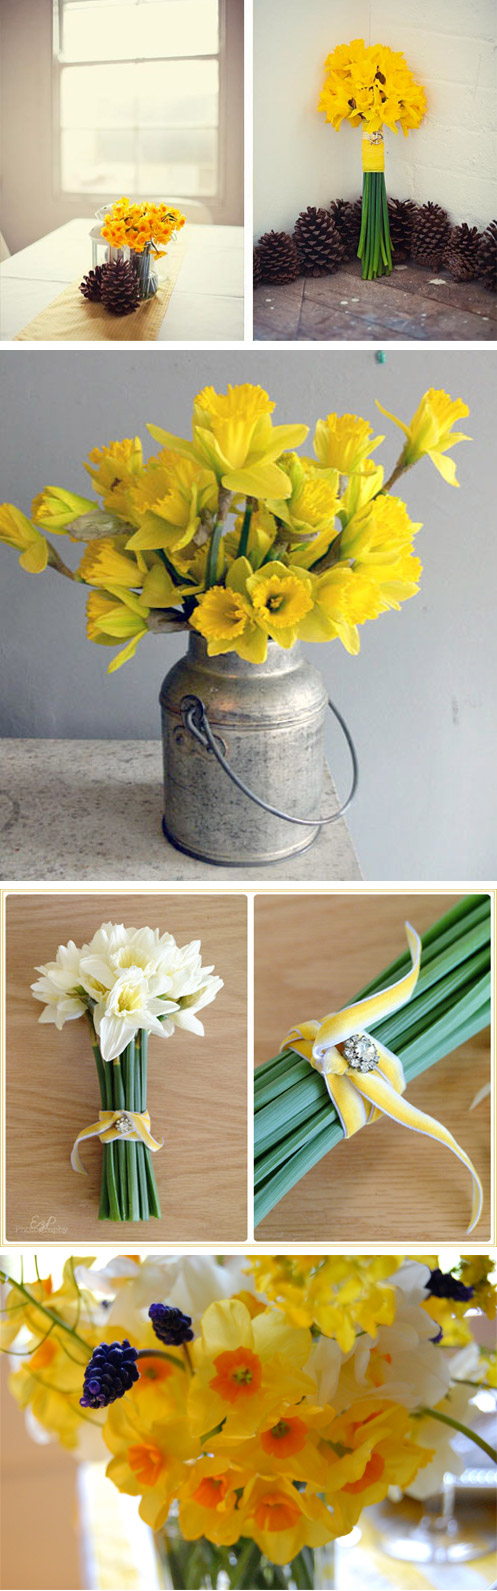 daffodil-wedding-inspiration